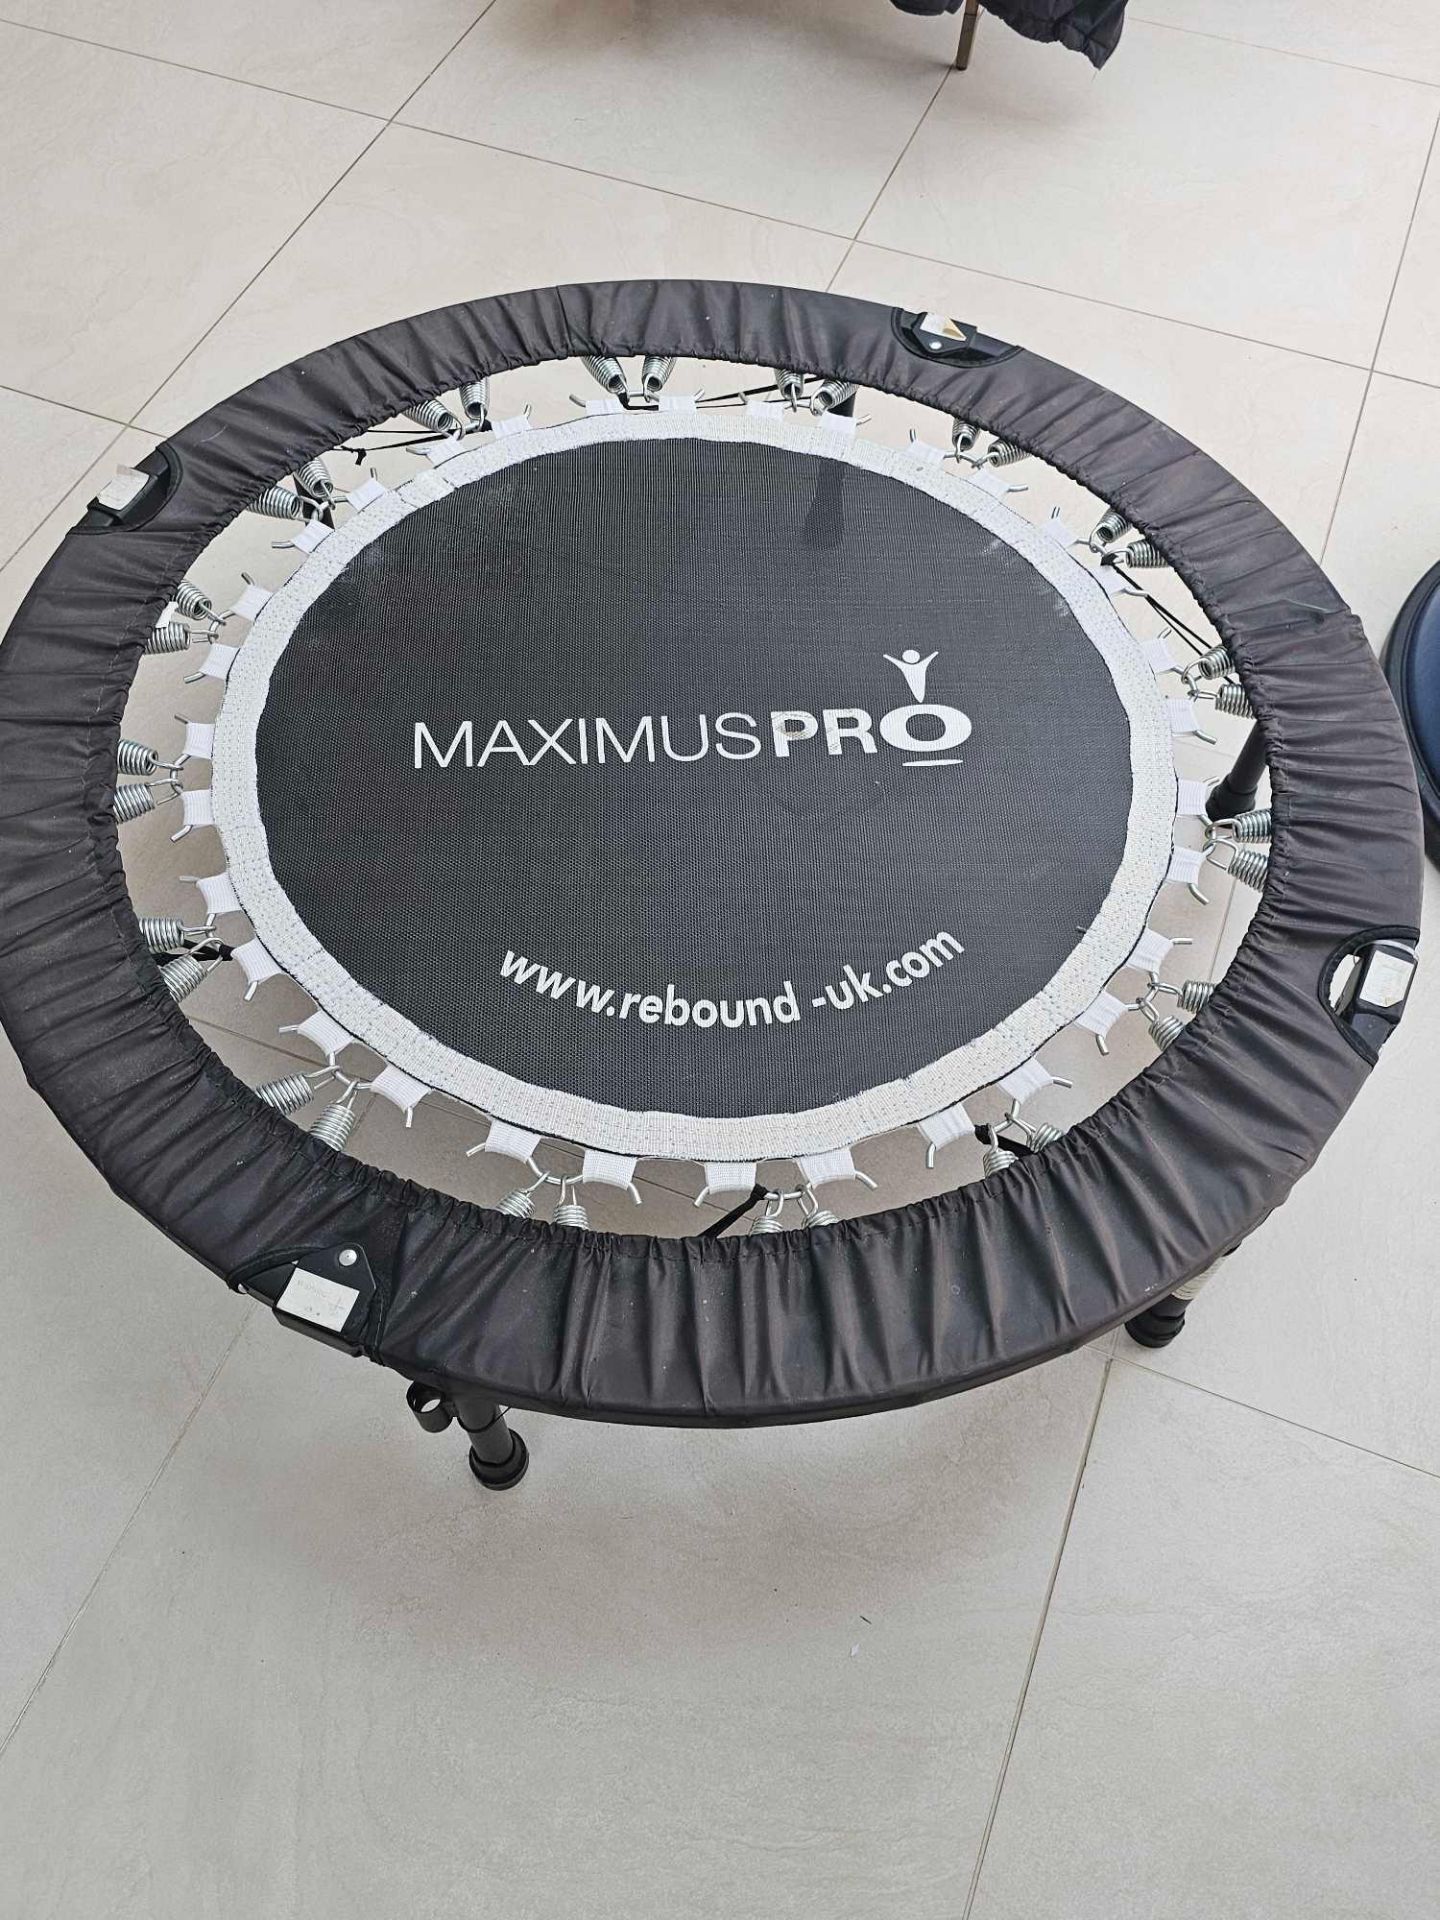 Maximus Pro Rebound UK Exercise Trampoline - Image 2 of 2